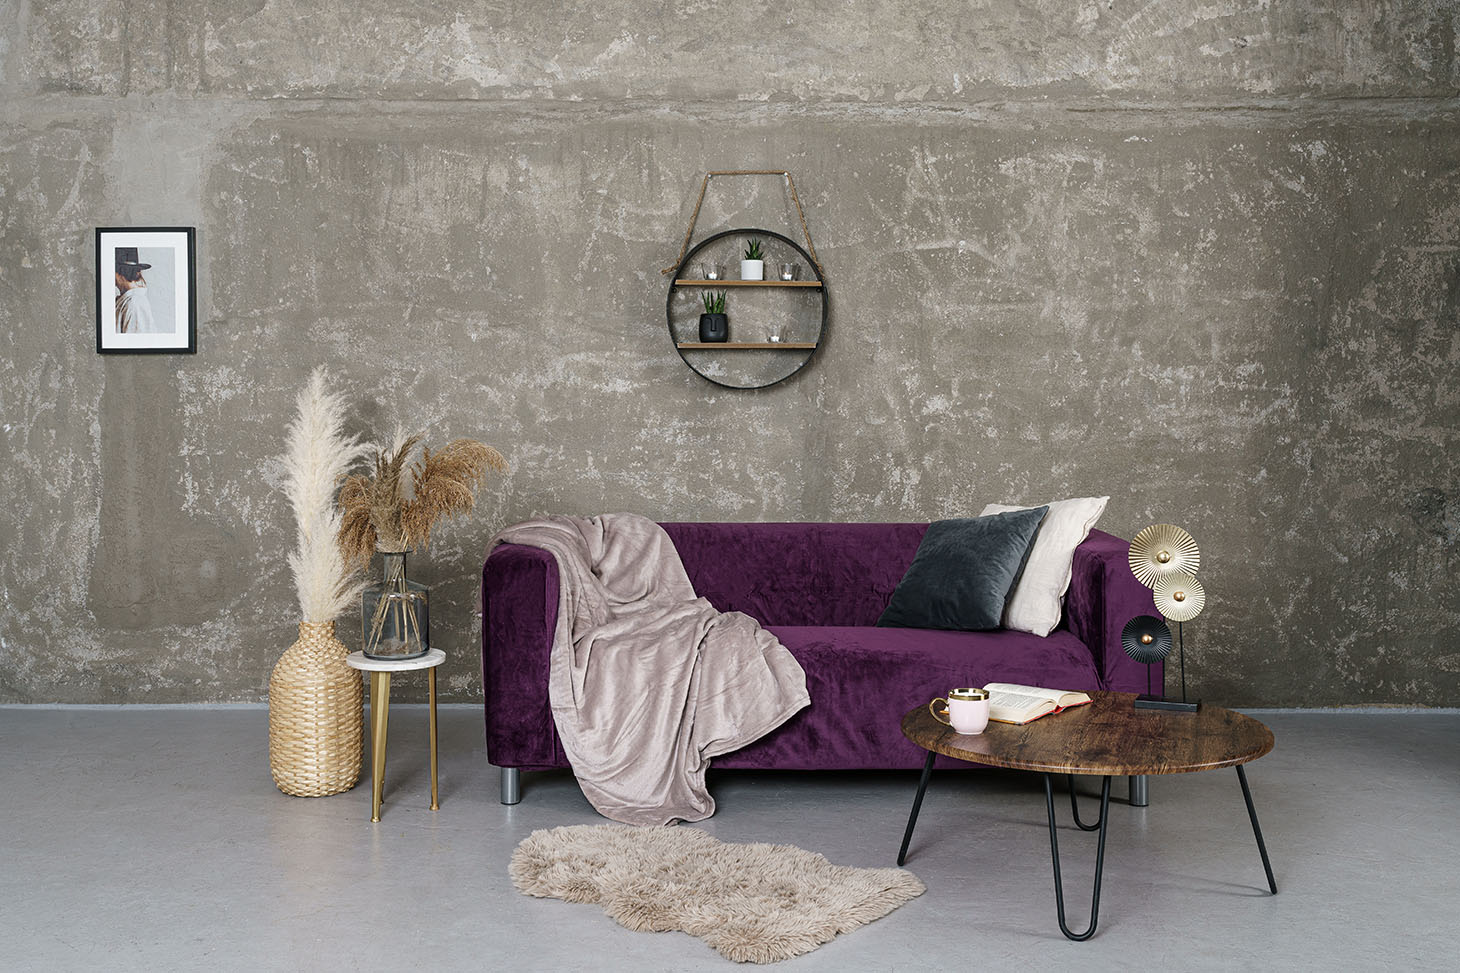 IKEA Klippan 2 Seater in Dark Violet Velvet Sofa Cover 